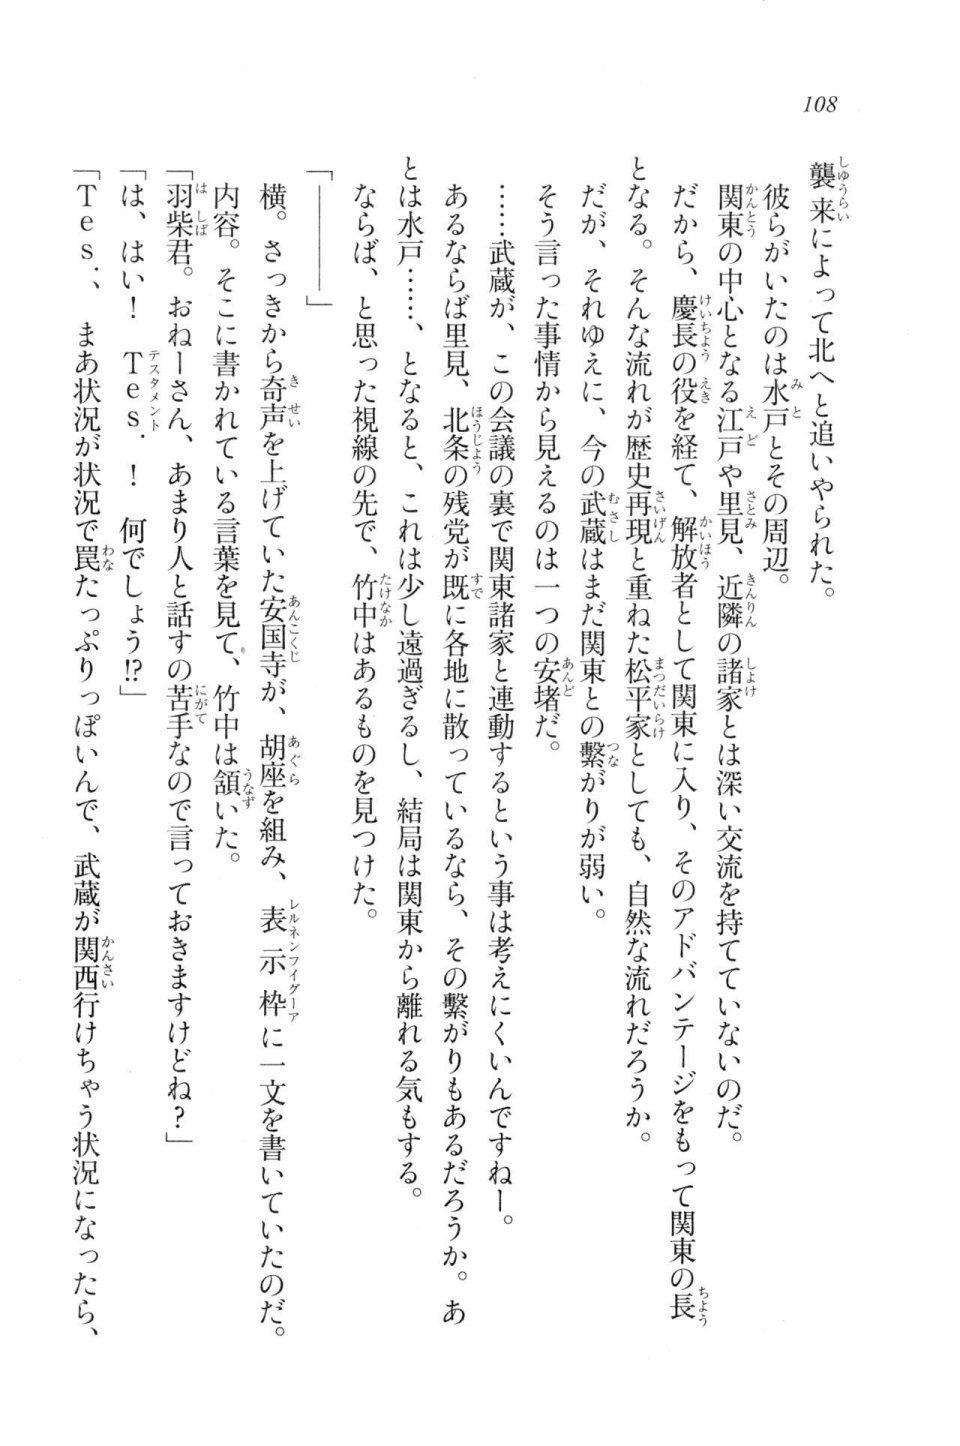 Kyoukai Senjou no Horizon LN Vol 20(8B) - Photo #108